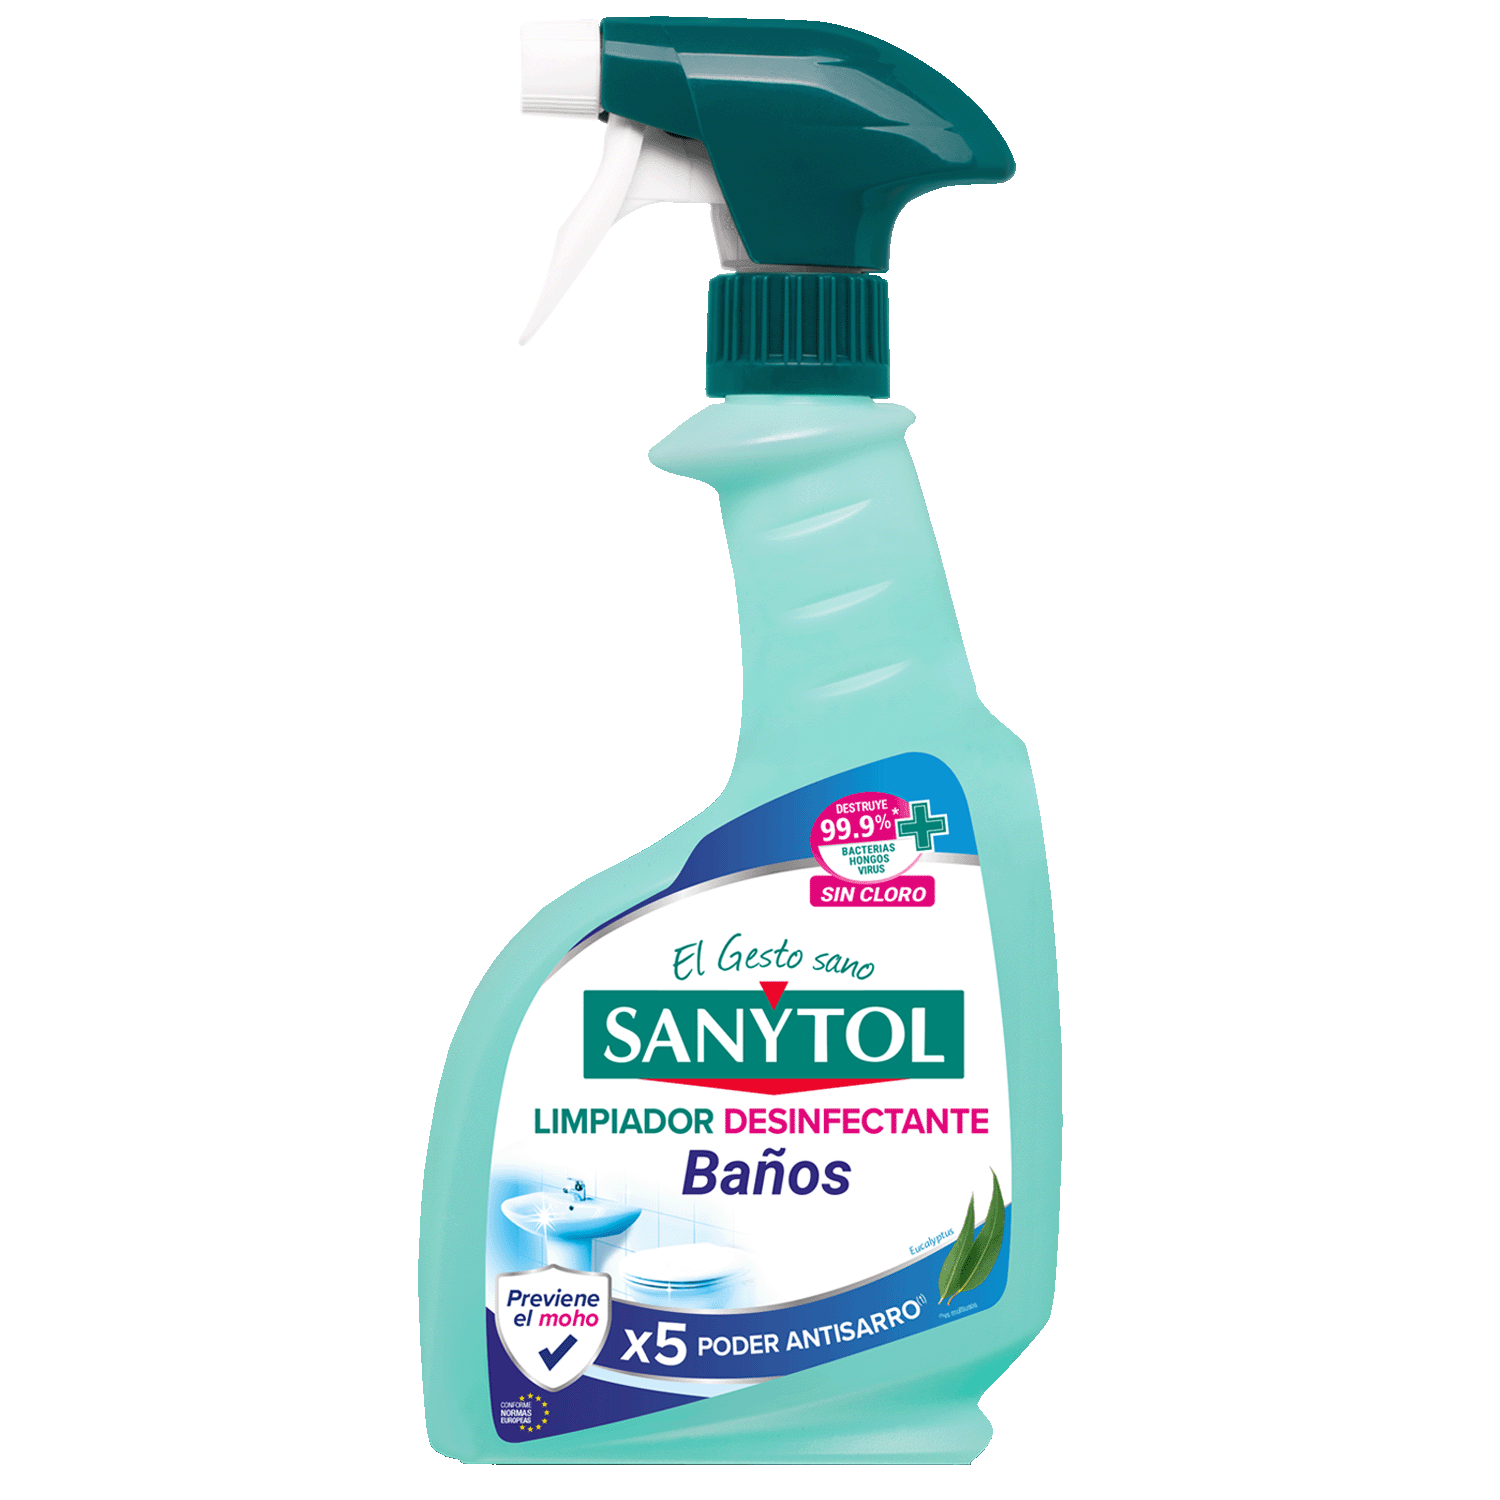 SANYTOL, el desinfectante para tu hogar. 